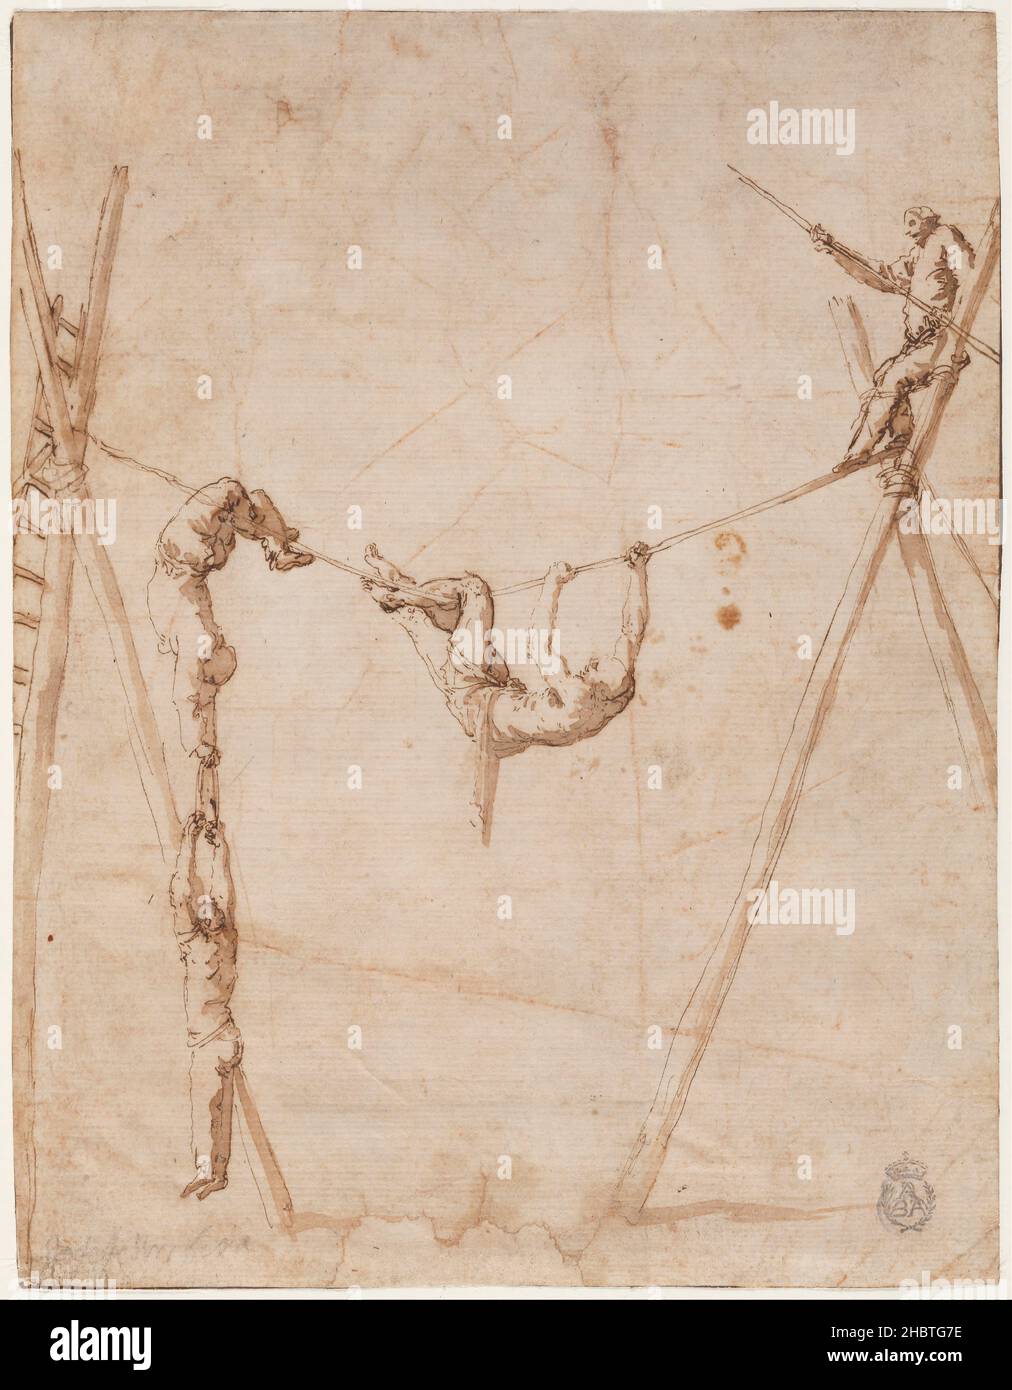 José de Ribera - Acróbatas en la cuerda. Stock Photo